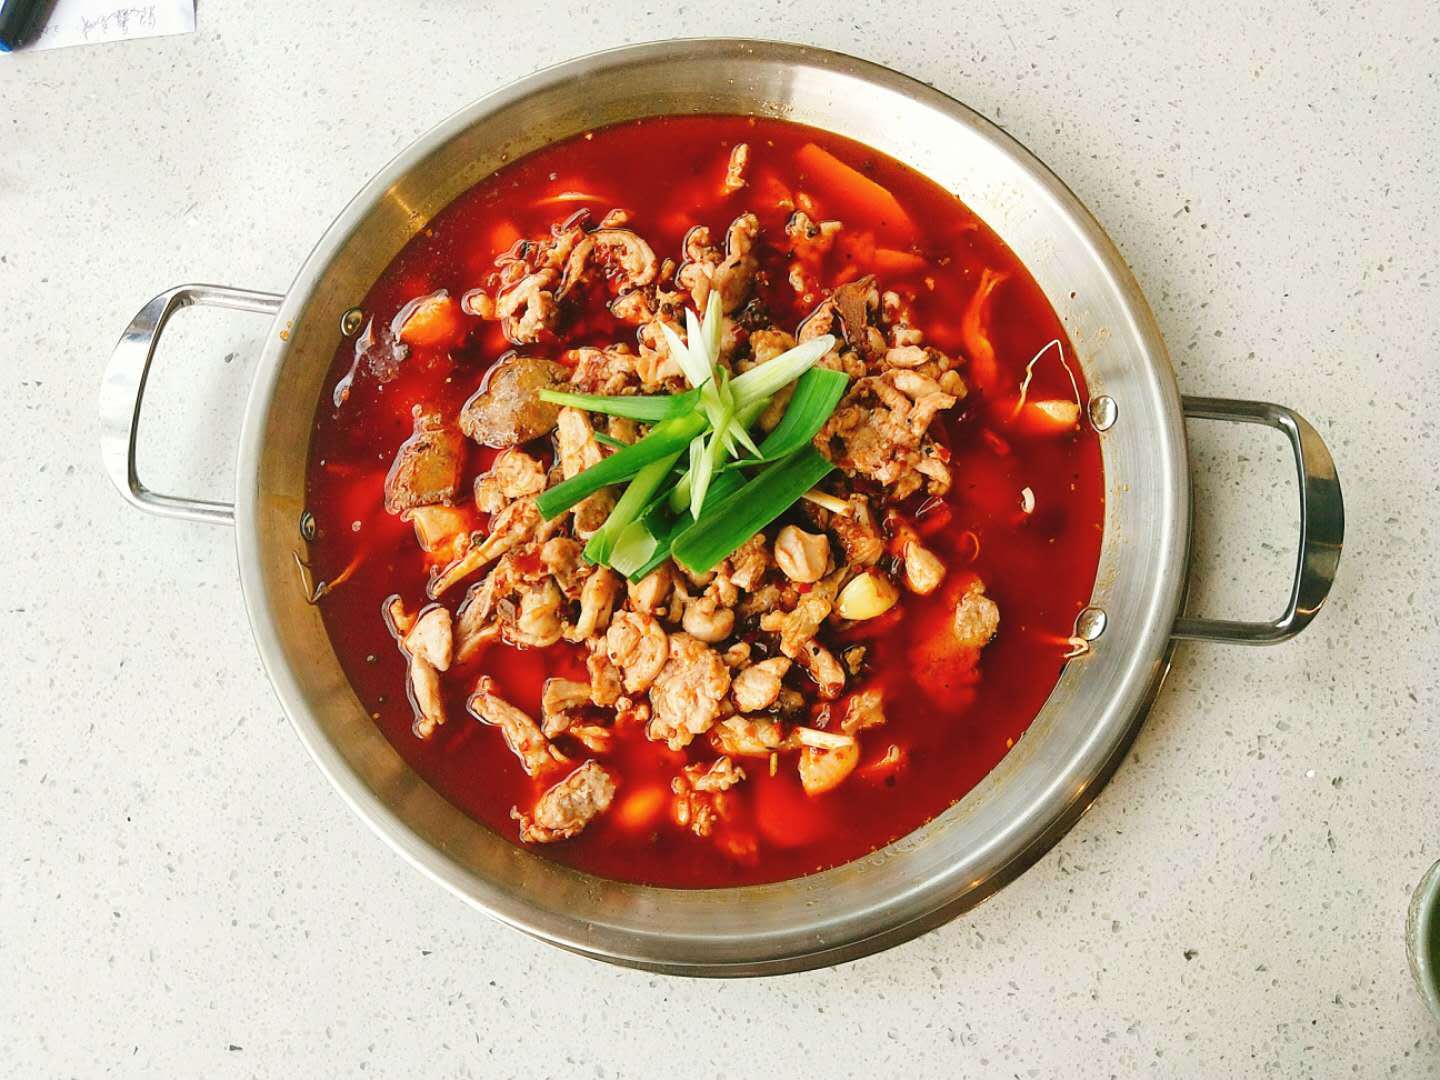 兔肉火锅技术培训,此汤锅是近年来出现的又一汤锅新品种,品质优良